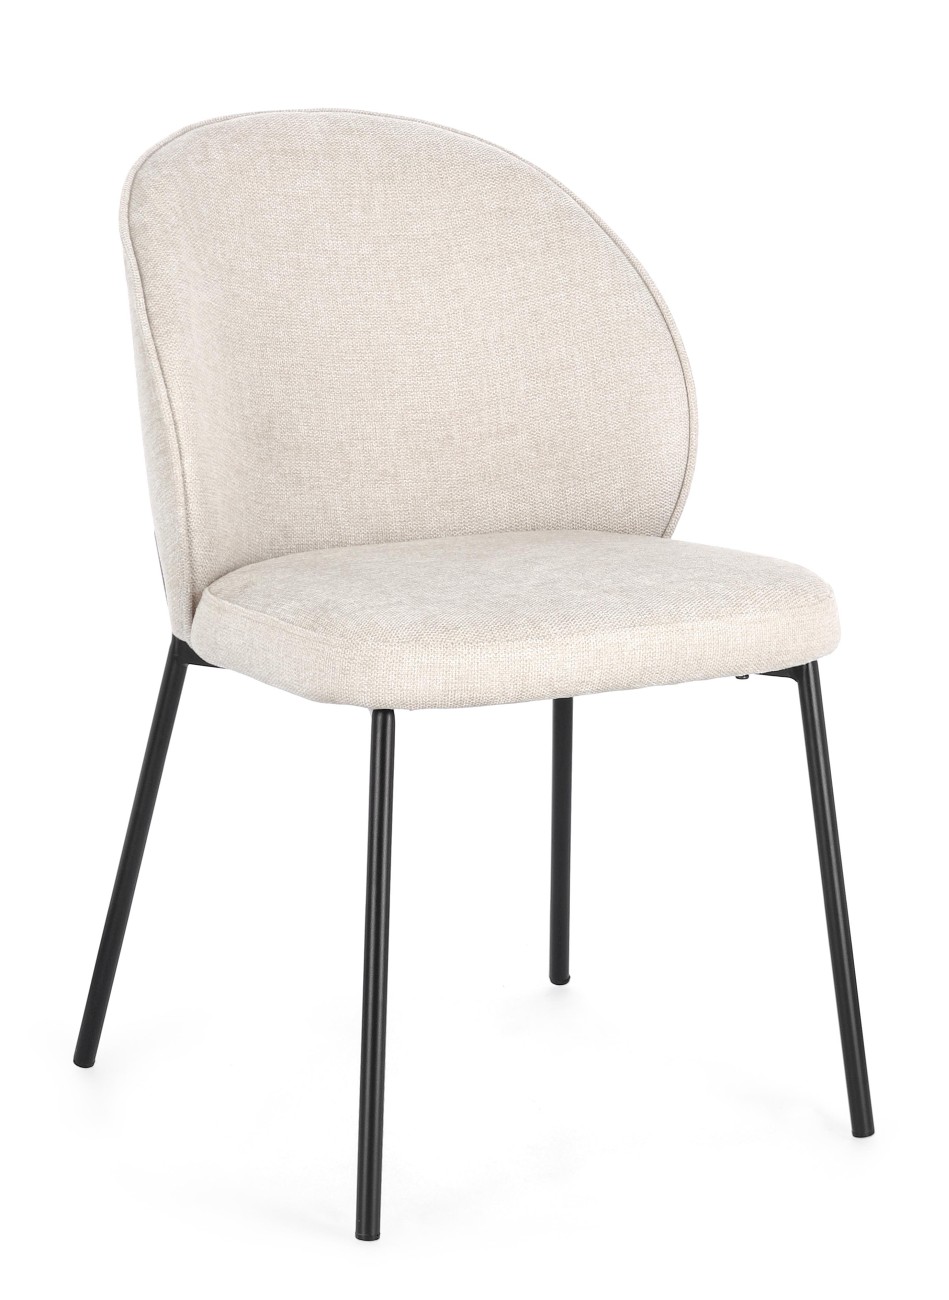 Der Esszimmerstuhl Wendy überzeugt mit seinem modernen Stil. Gefertigt wurde er aus Stoff, welcher einen Beigen Farbton besitzt. Das Gestell ist aus Metall und hat eine schwarze Farbe. Der Stuhl besitzt eine Sitzhöhe von 48 cm.